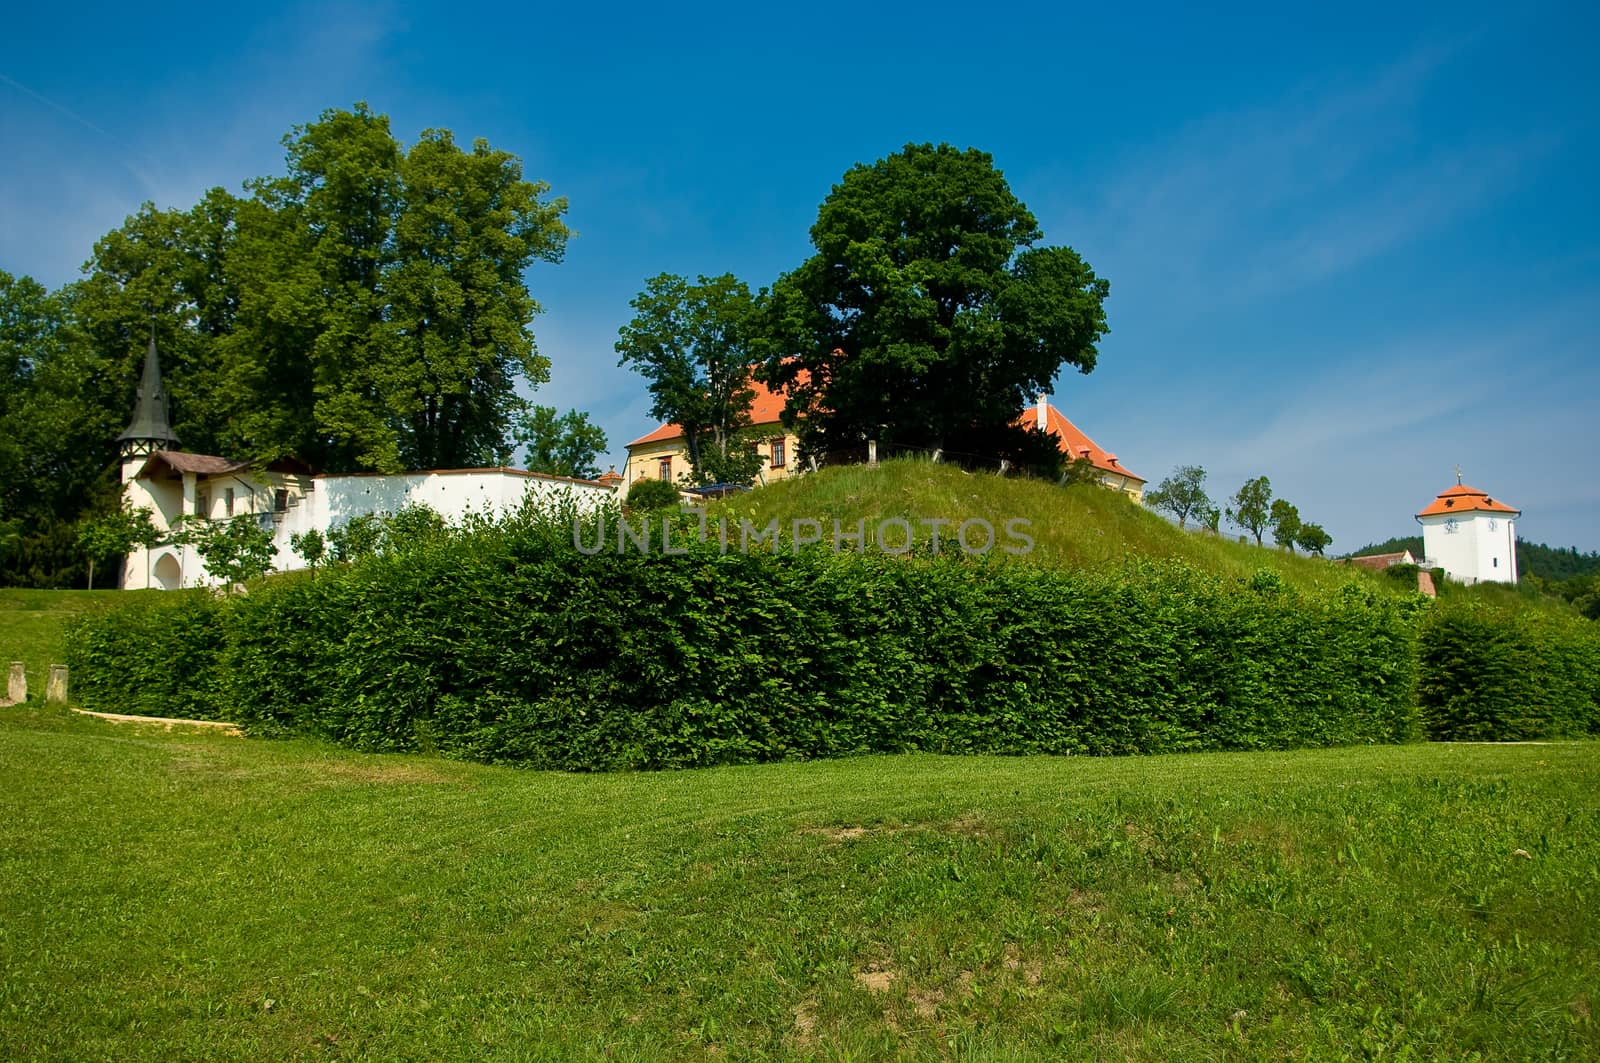 Kunstatt in Moravia castle. by zbynek